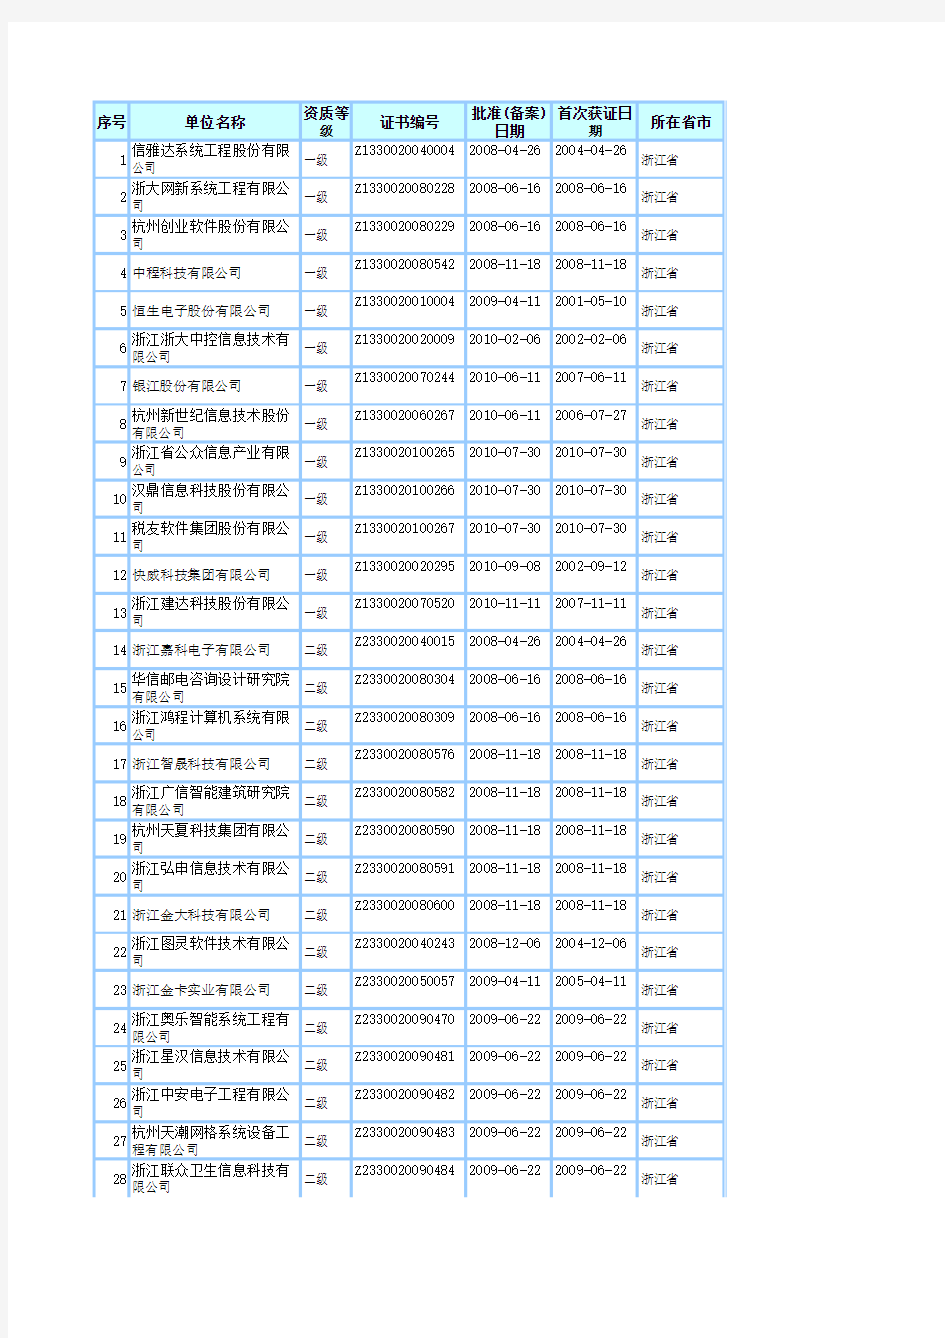 2011最新浙江省系统集成商名单